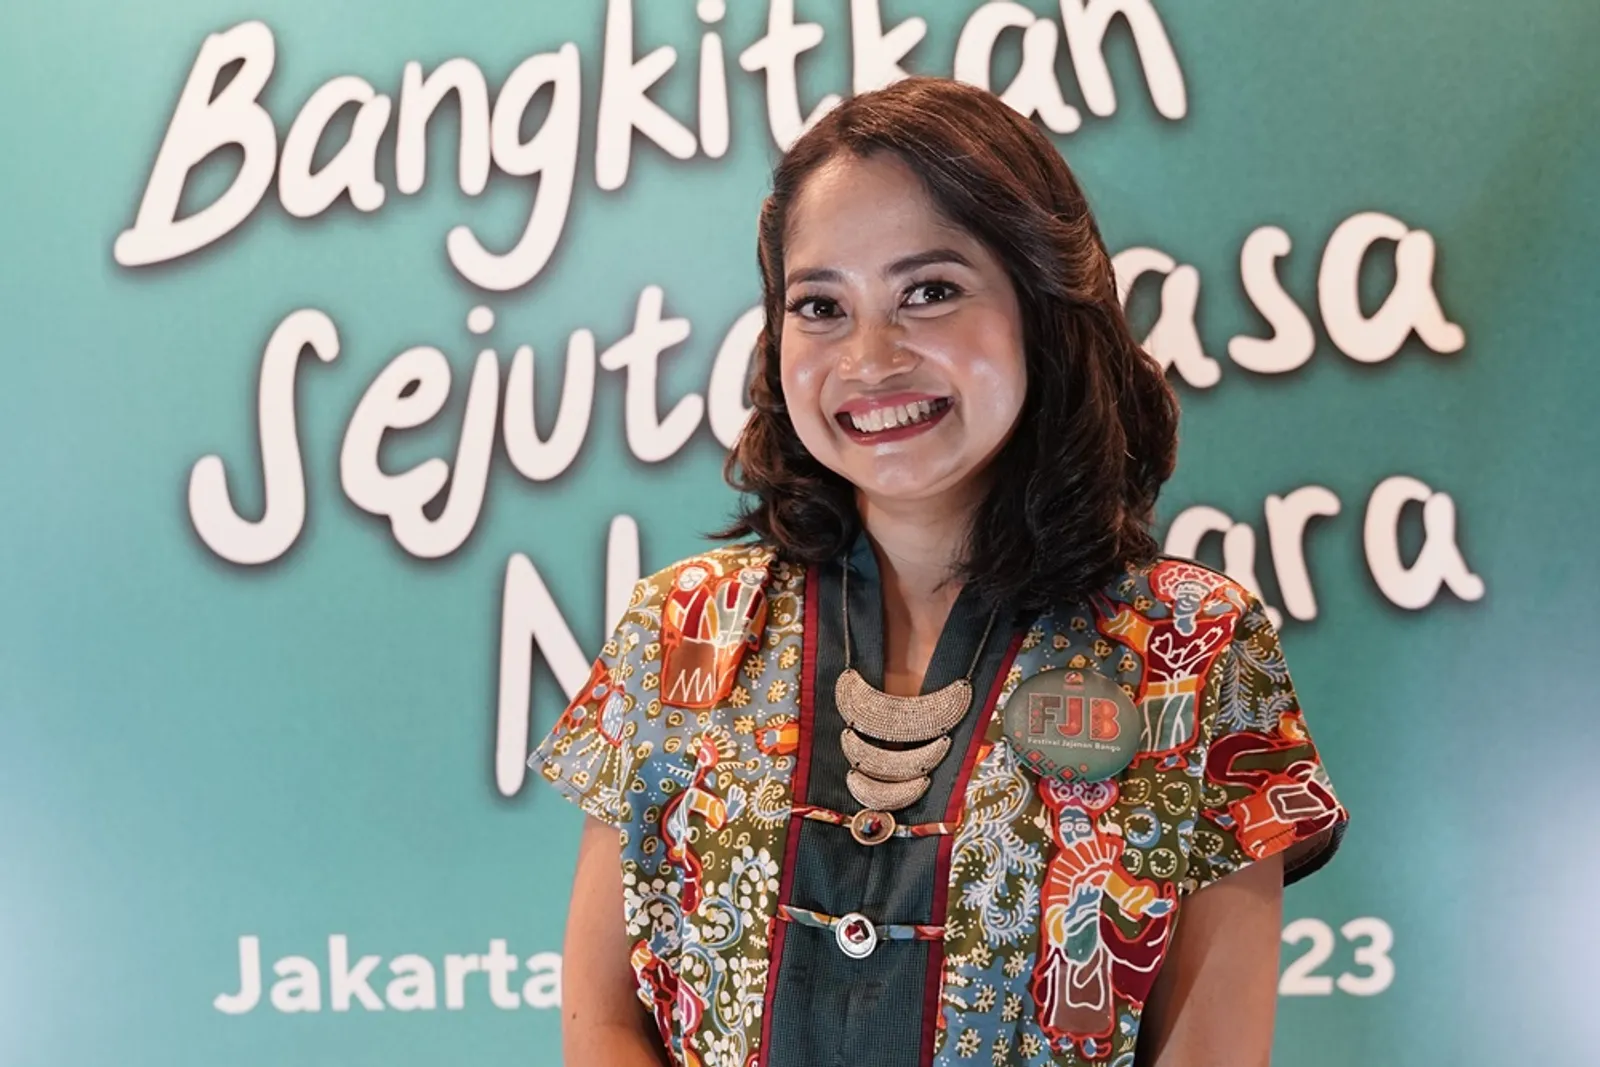 FJB 2023, Kembali Hadir Lestarikan Kuliner Indonesia di 2 Kota